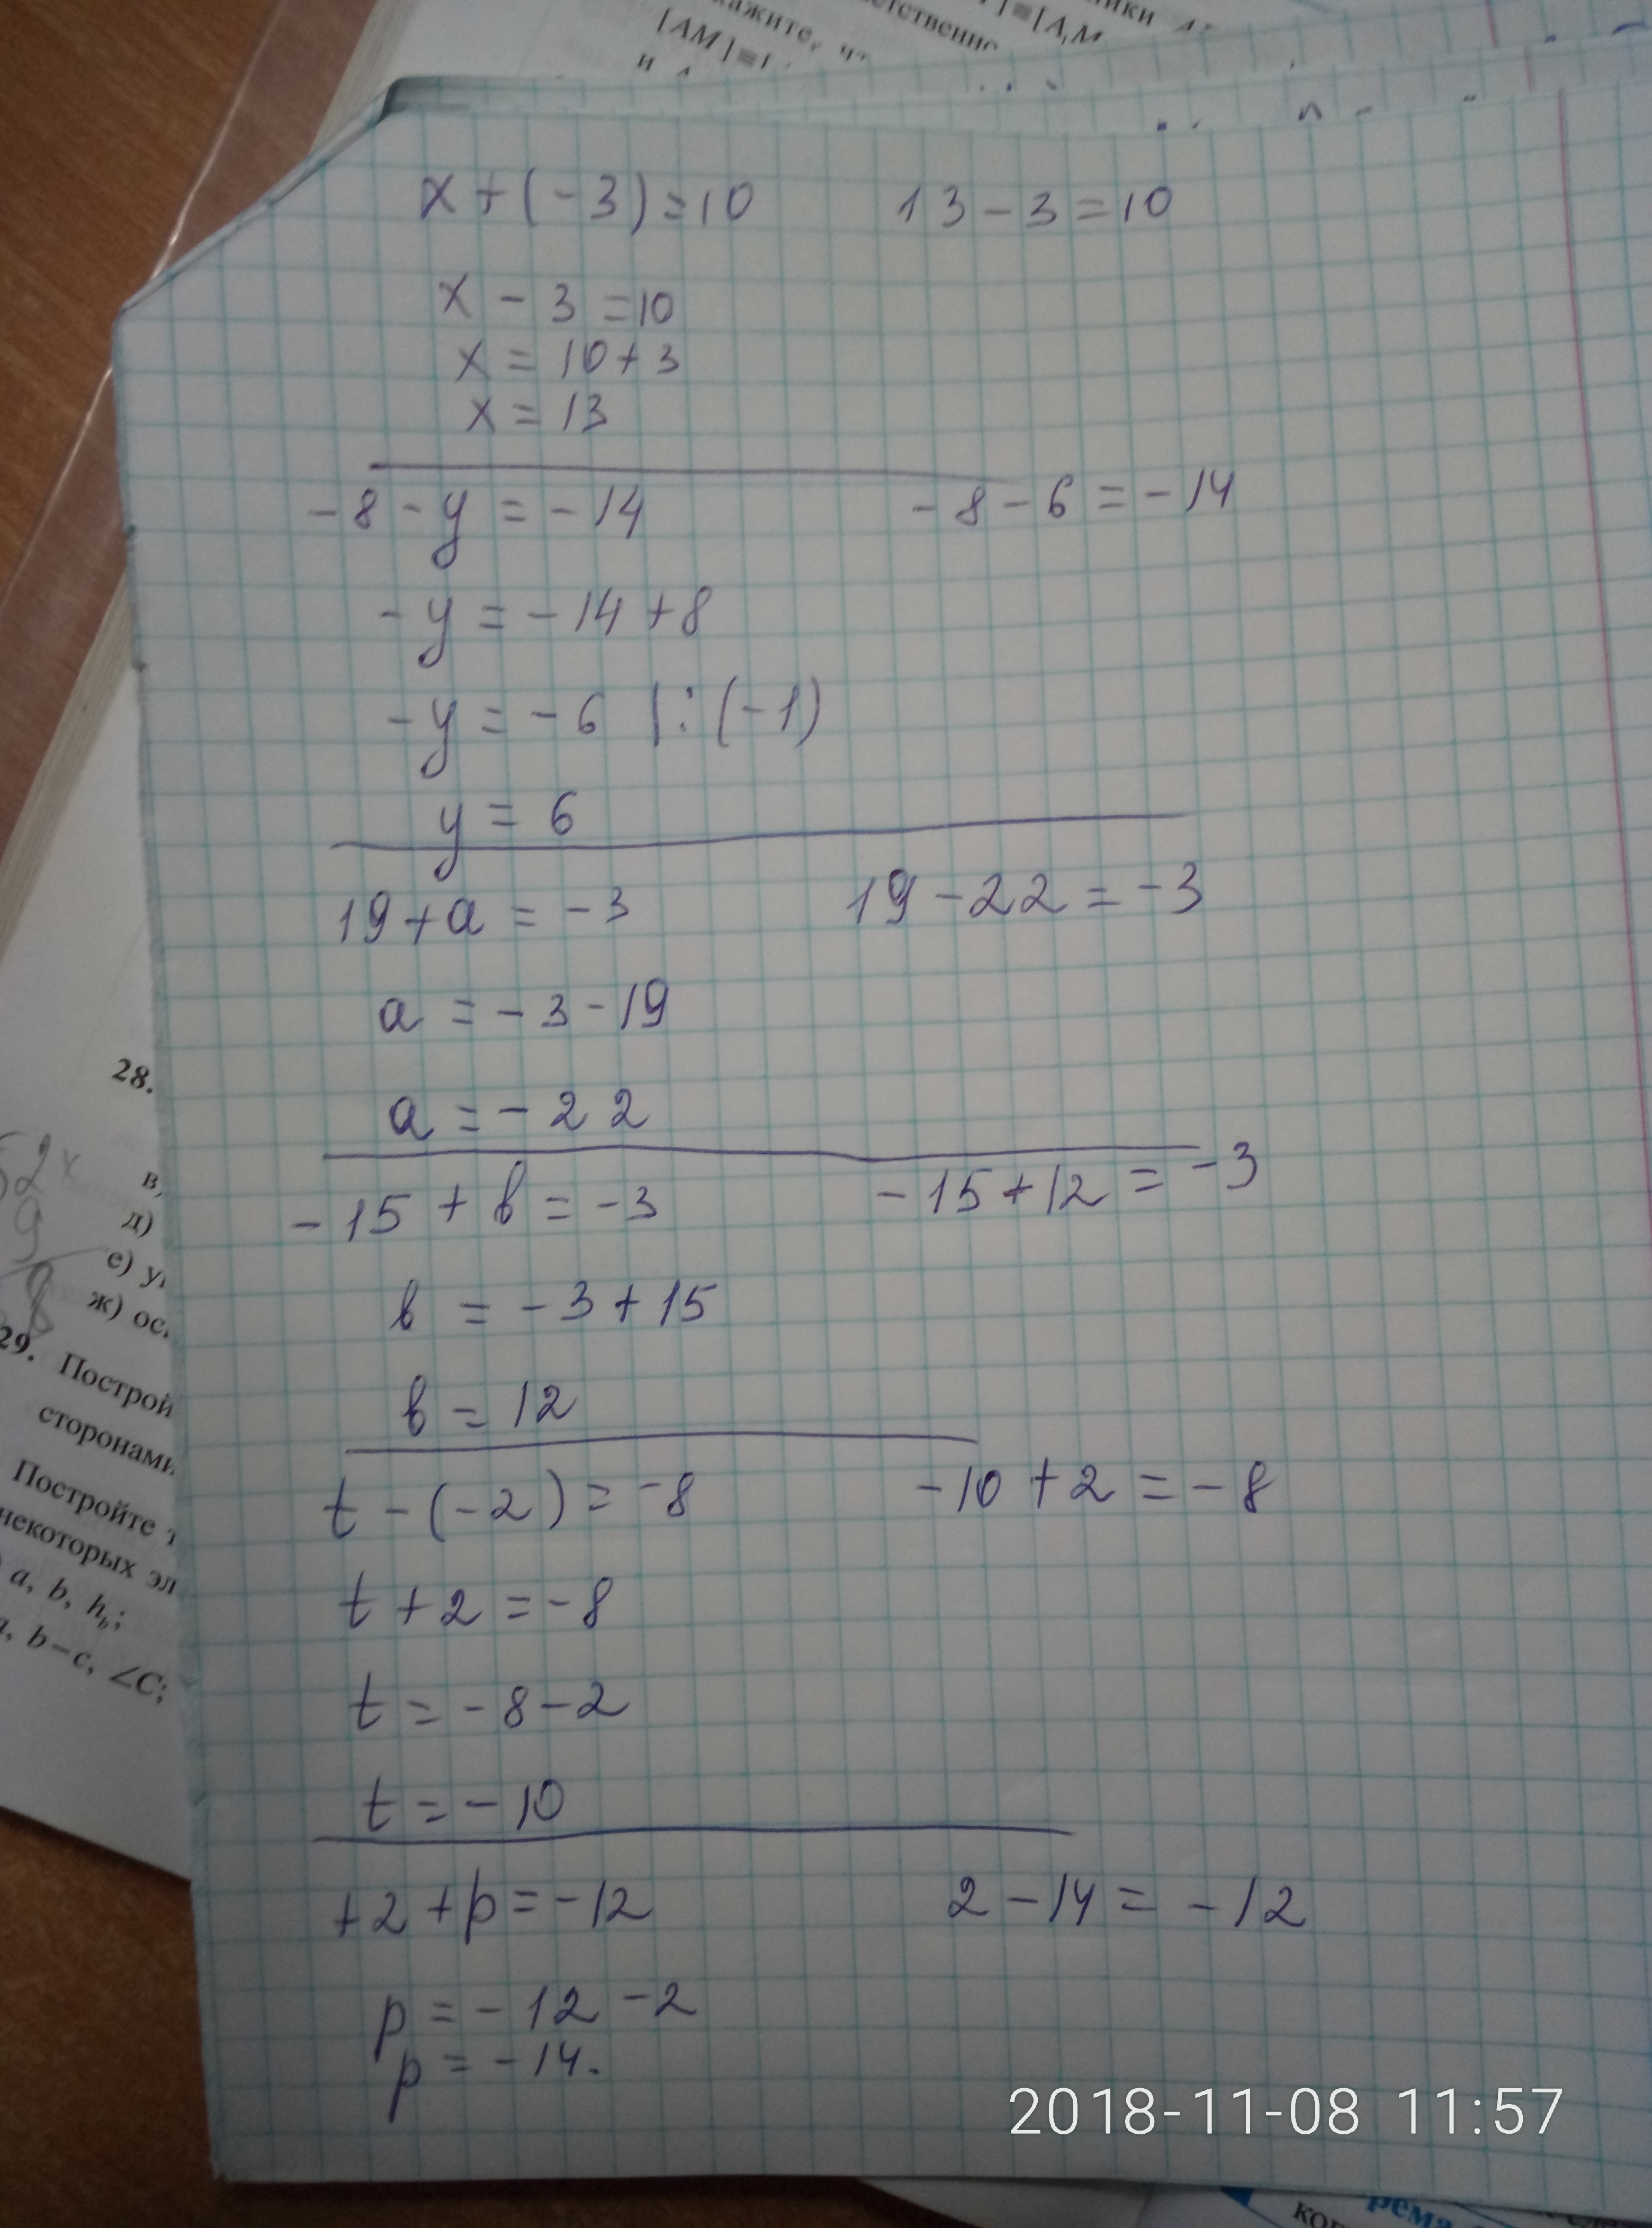 2 08 x 2 8. Ответ 8= x=2. X^3-6x^2+3x+21=0 решение. 8/X-3-10/X 2. X-3 ответ.